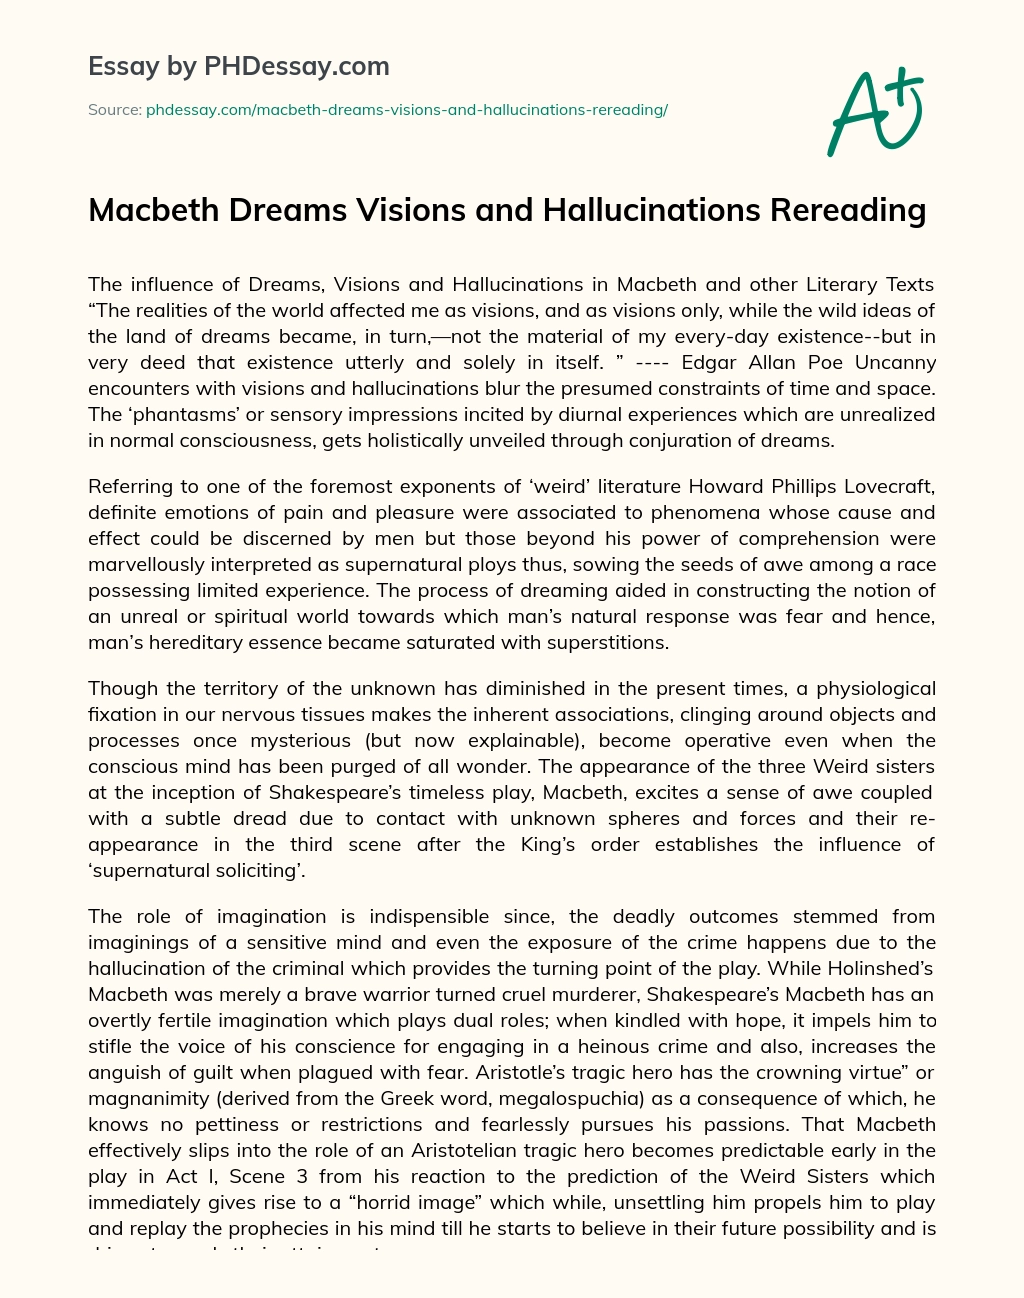 Macbeth Dreams Visions and Hallucinations Rereading essay